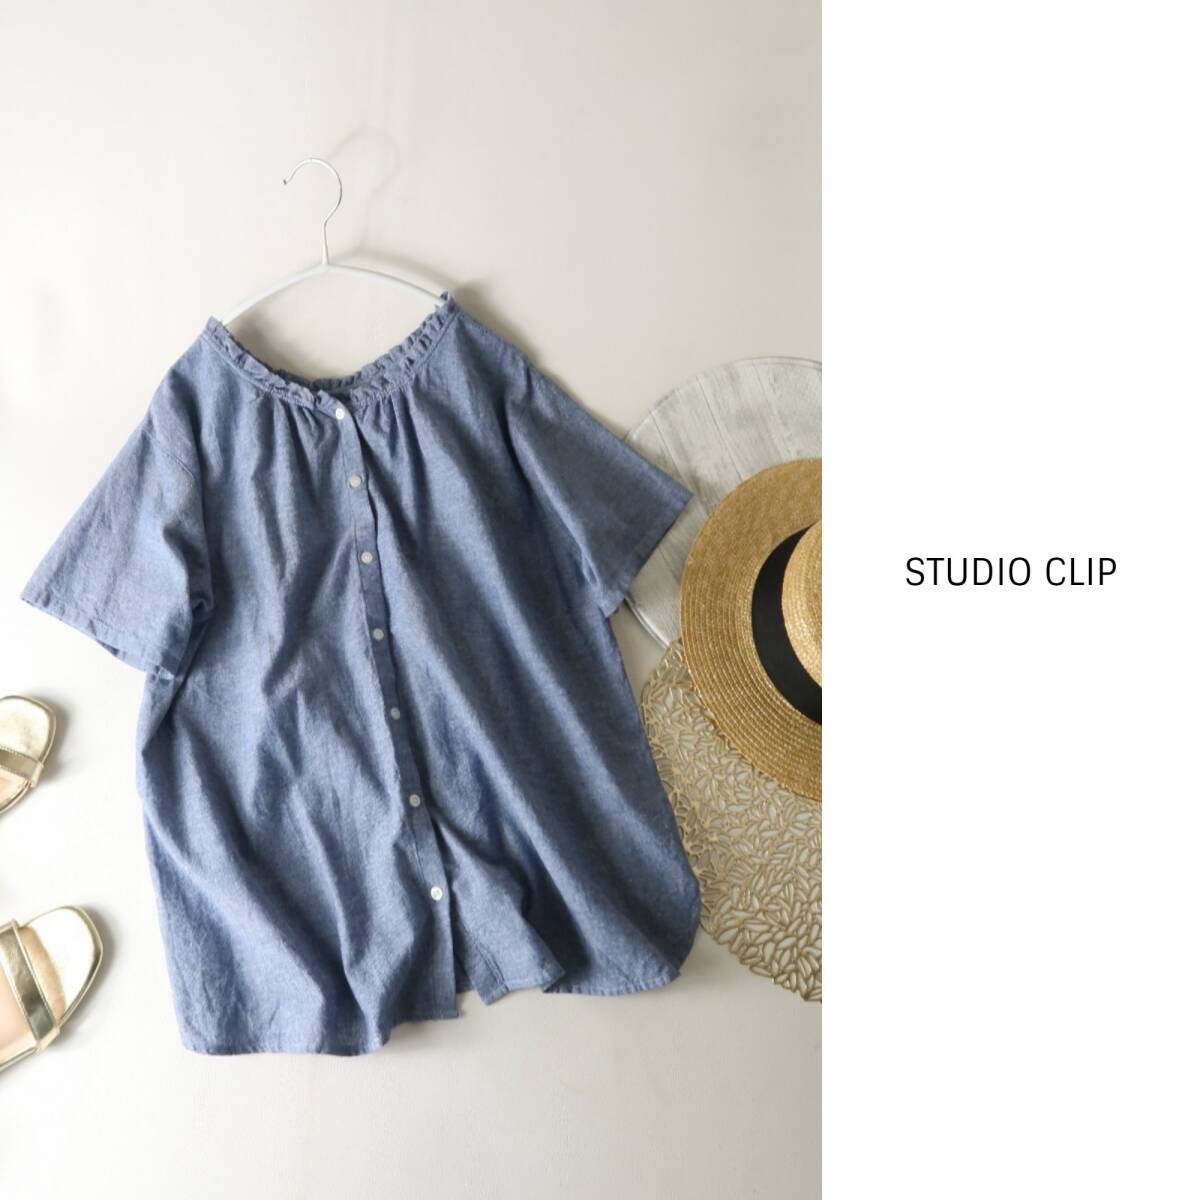  Studio Clip STUDIO CLIP*... хлопок 100% одиночный марля ассортимент оборка воротник блуза M размер *C-K1829